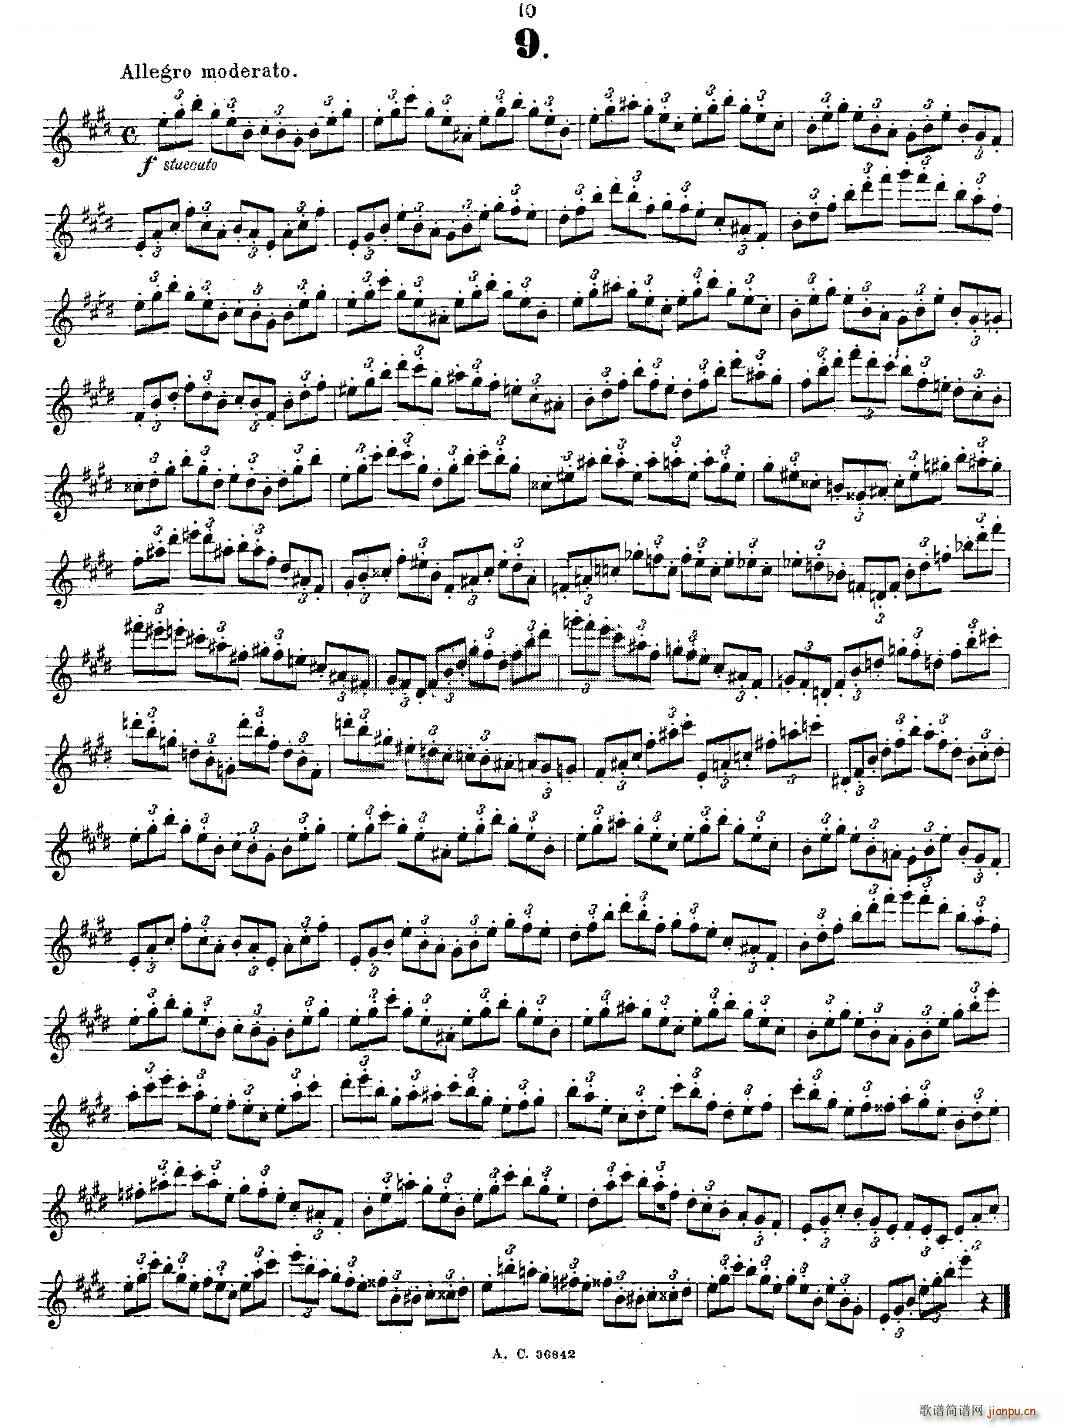 24首长笛练习曲 Op 21 之1 12 铜管(笛箫谱)10